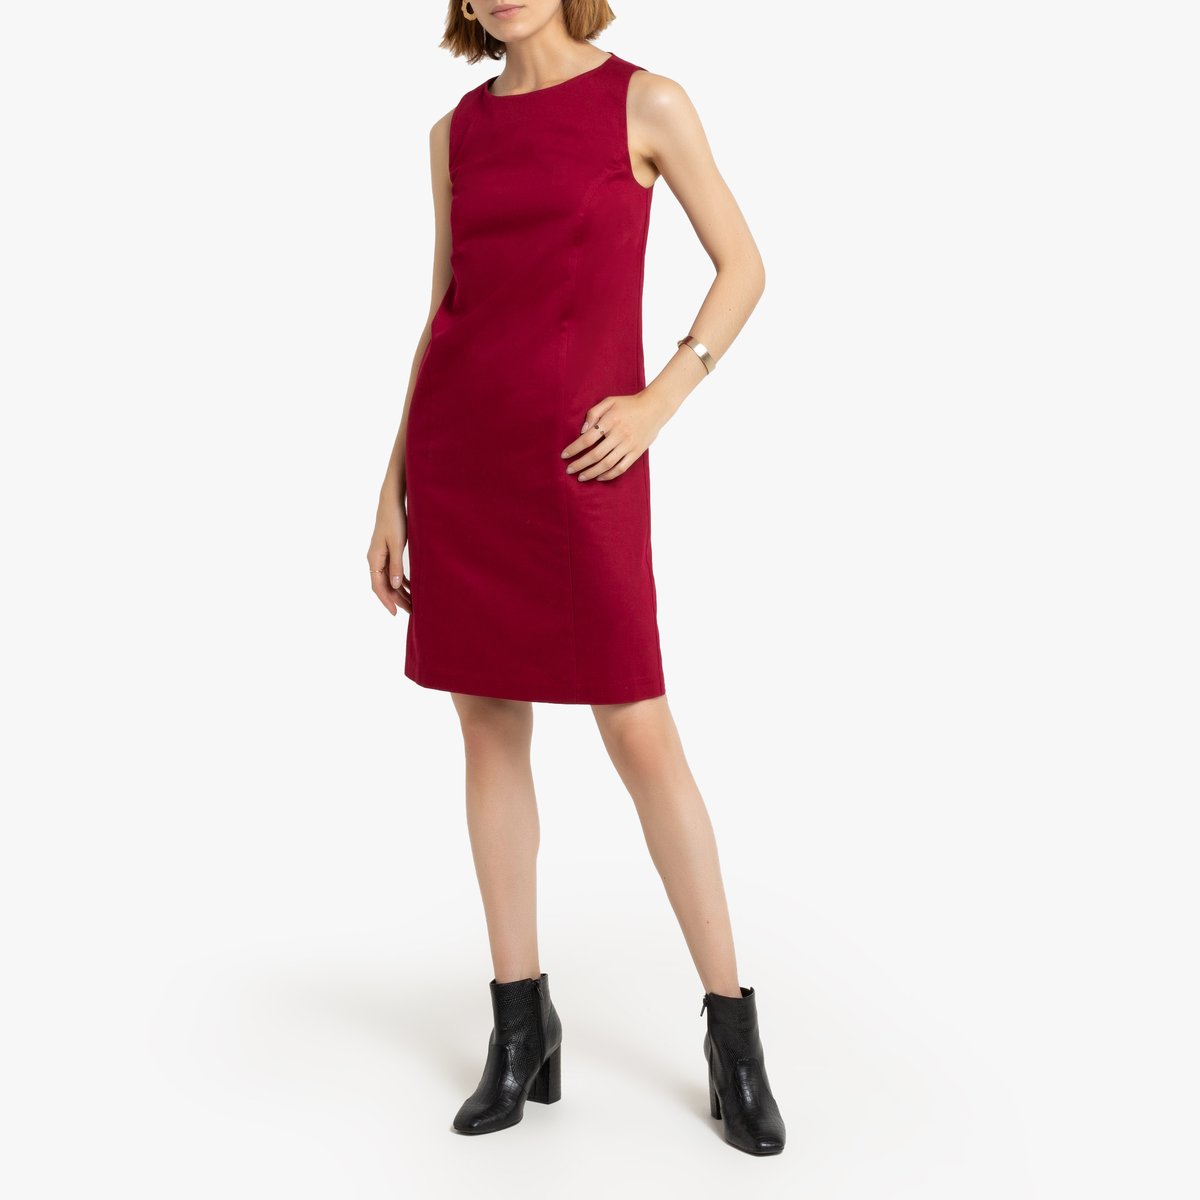 Платье La Redoute Короткое прямое без рукавов 36 (FR) - 42 (RUS) красный, размер 36 (FR) - 42 (RUS) Короткое прямое без рукавов 36 (FR) - 42 (RUS) красный - фото 2